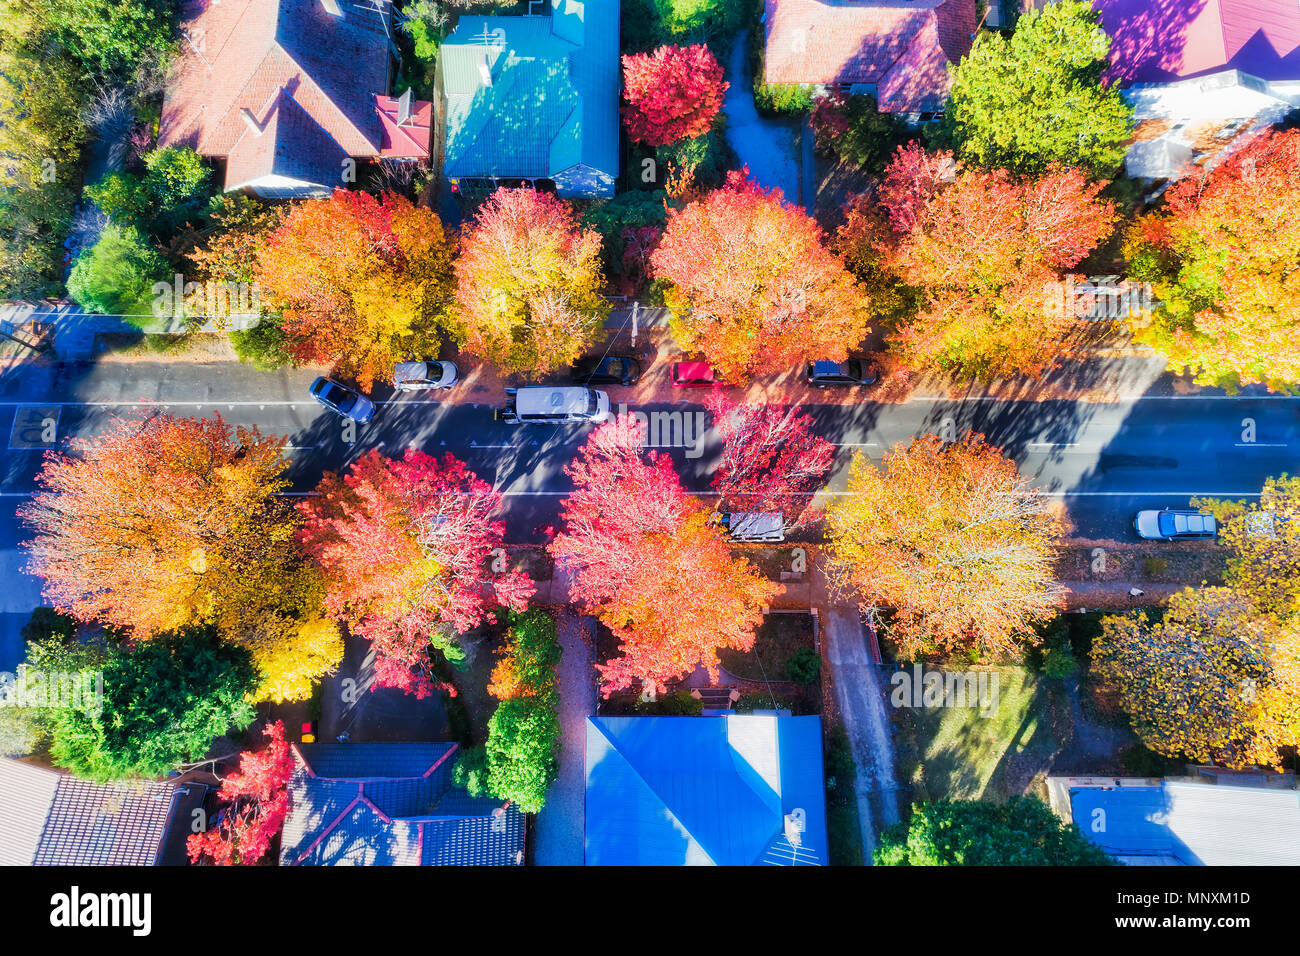 Las bolas brillantes de florecimiento de los árboles de hojas en otoño cuando las hojas son de color rojo, naranja, amarillo. De arriba a abajo mire la calle ciudad de Blackheath en azul mou Foto de stock